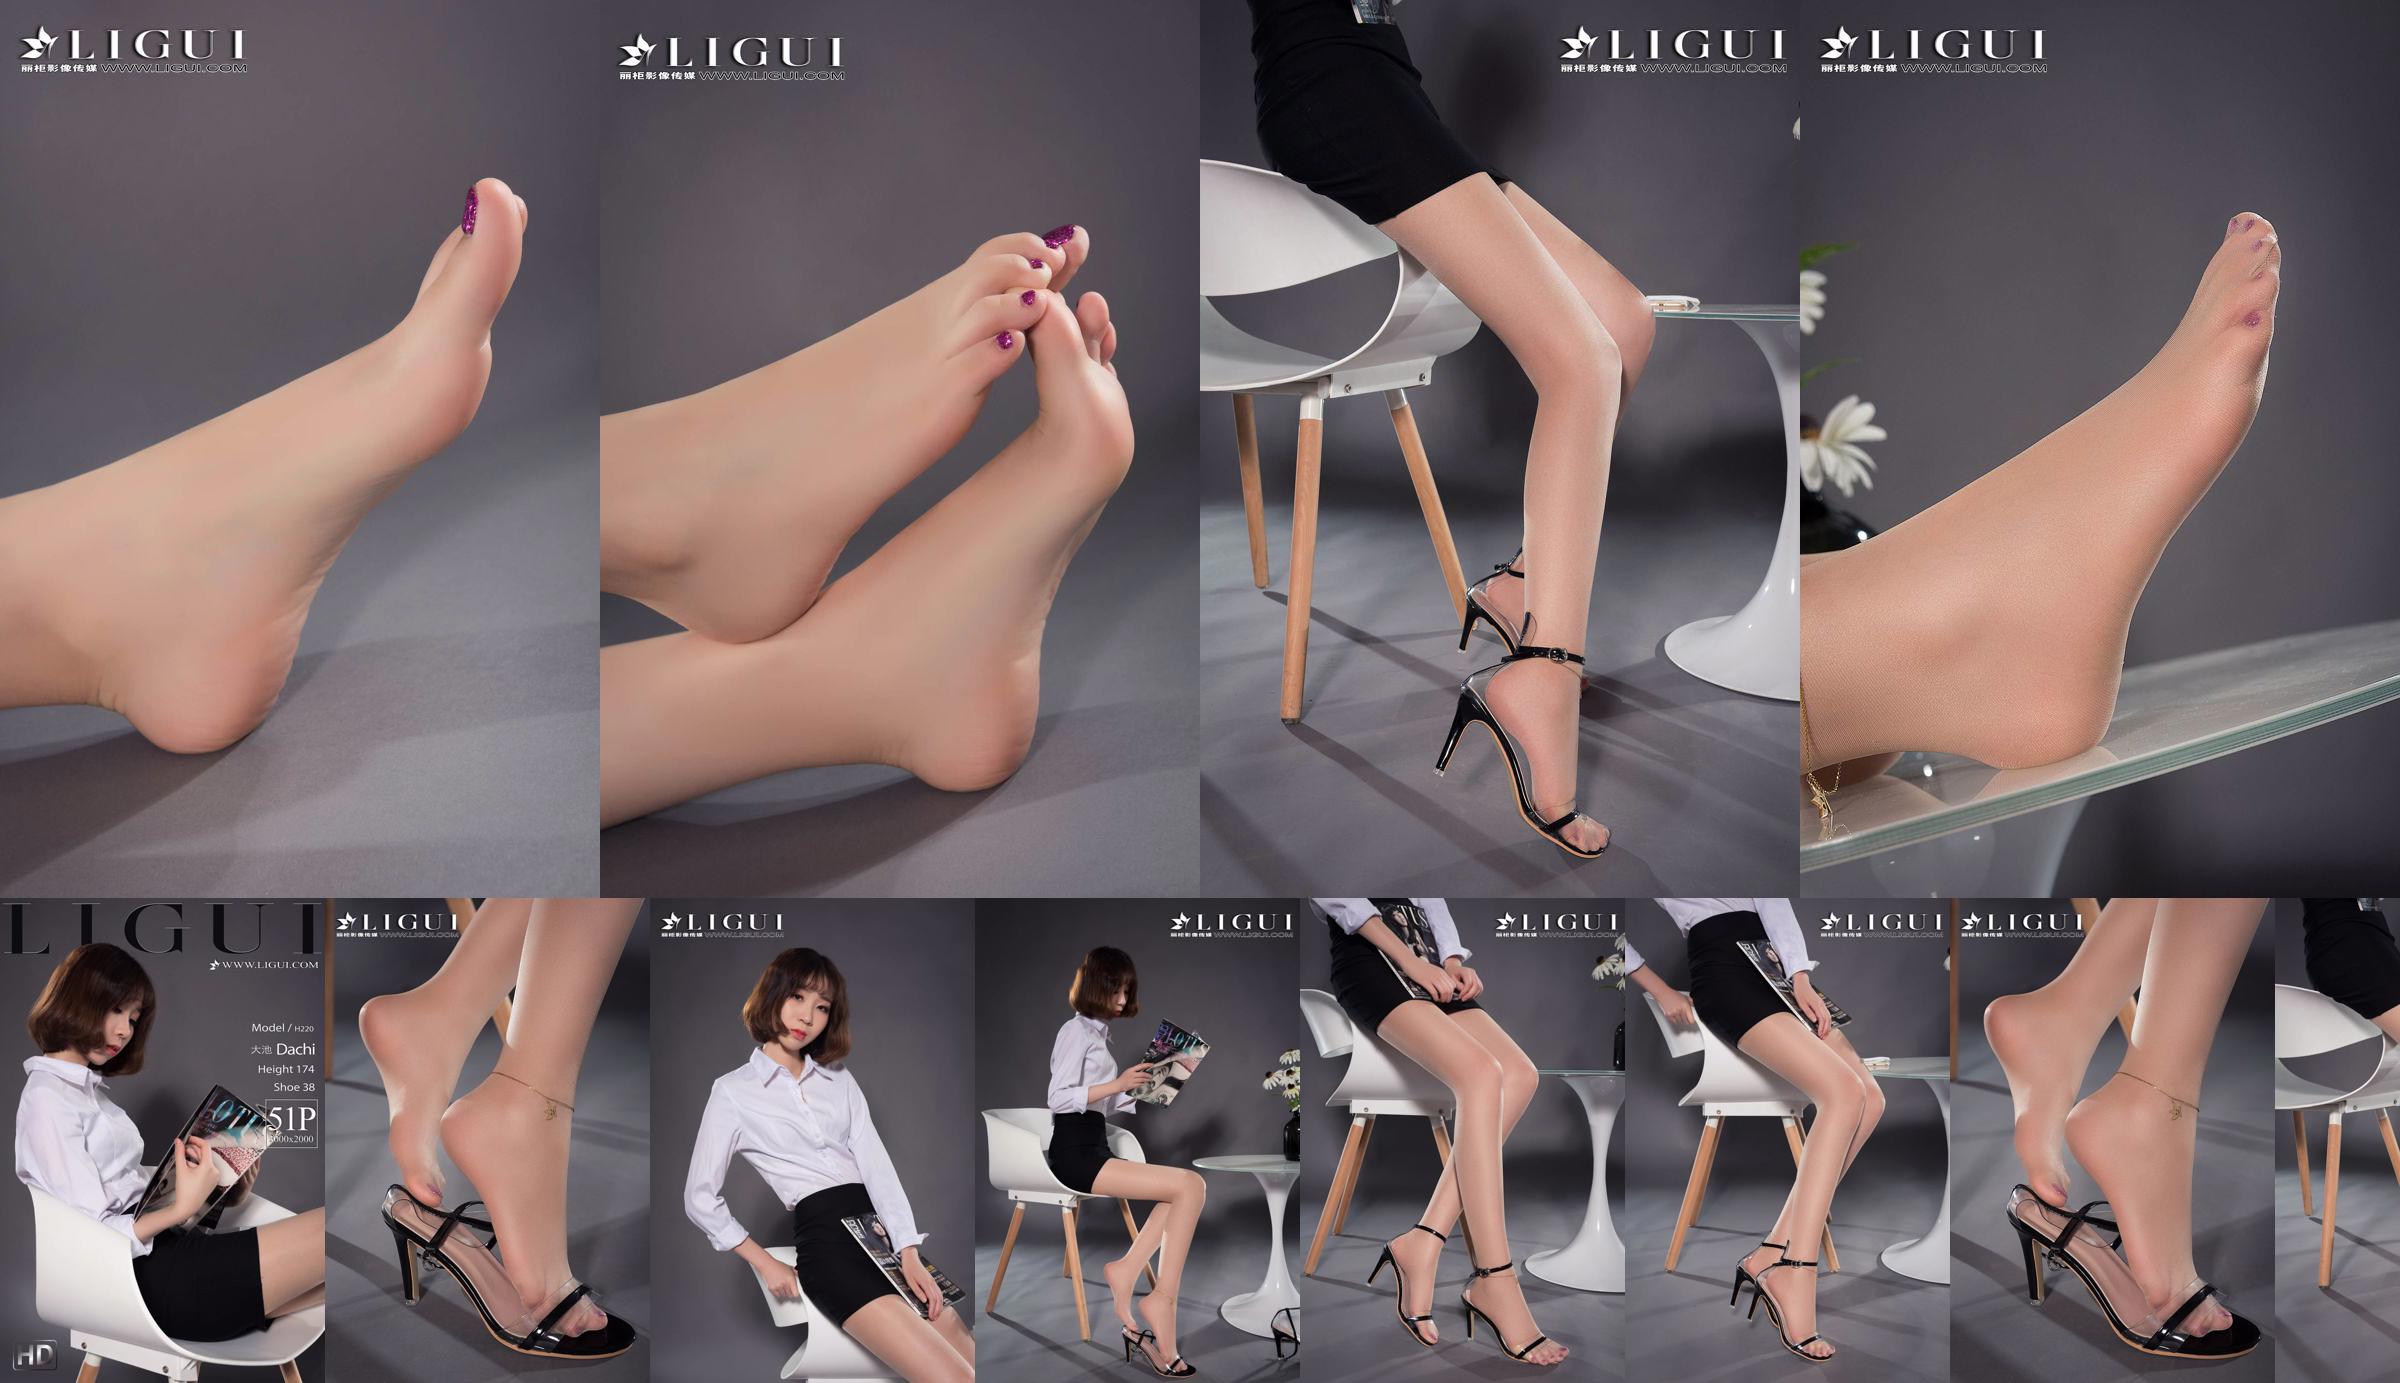 Người mẫu chân Oike "Heo với giày cao gót CV" [Ligui Ligui] Vẻ đẹp Internet No.641635 Trang 11